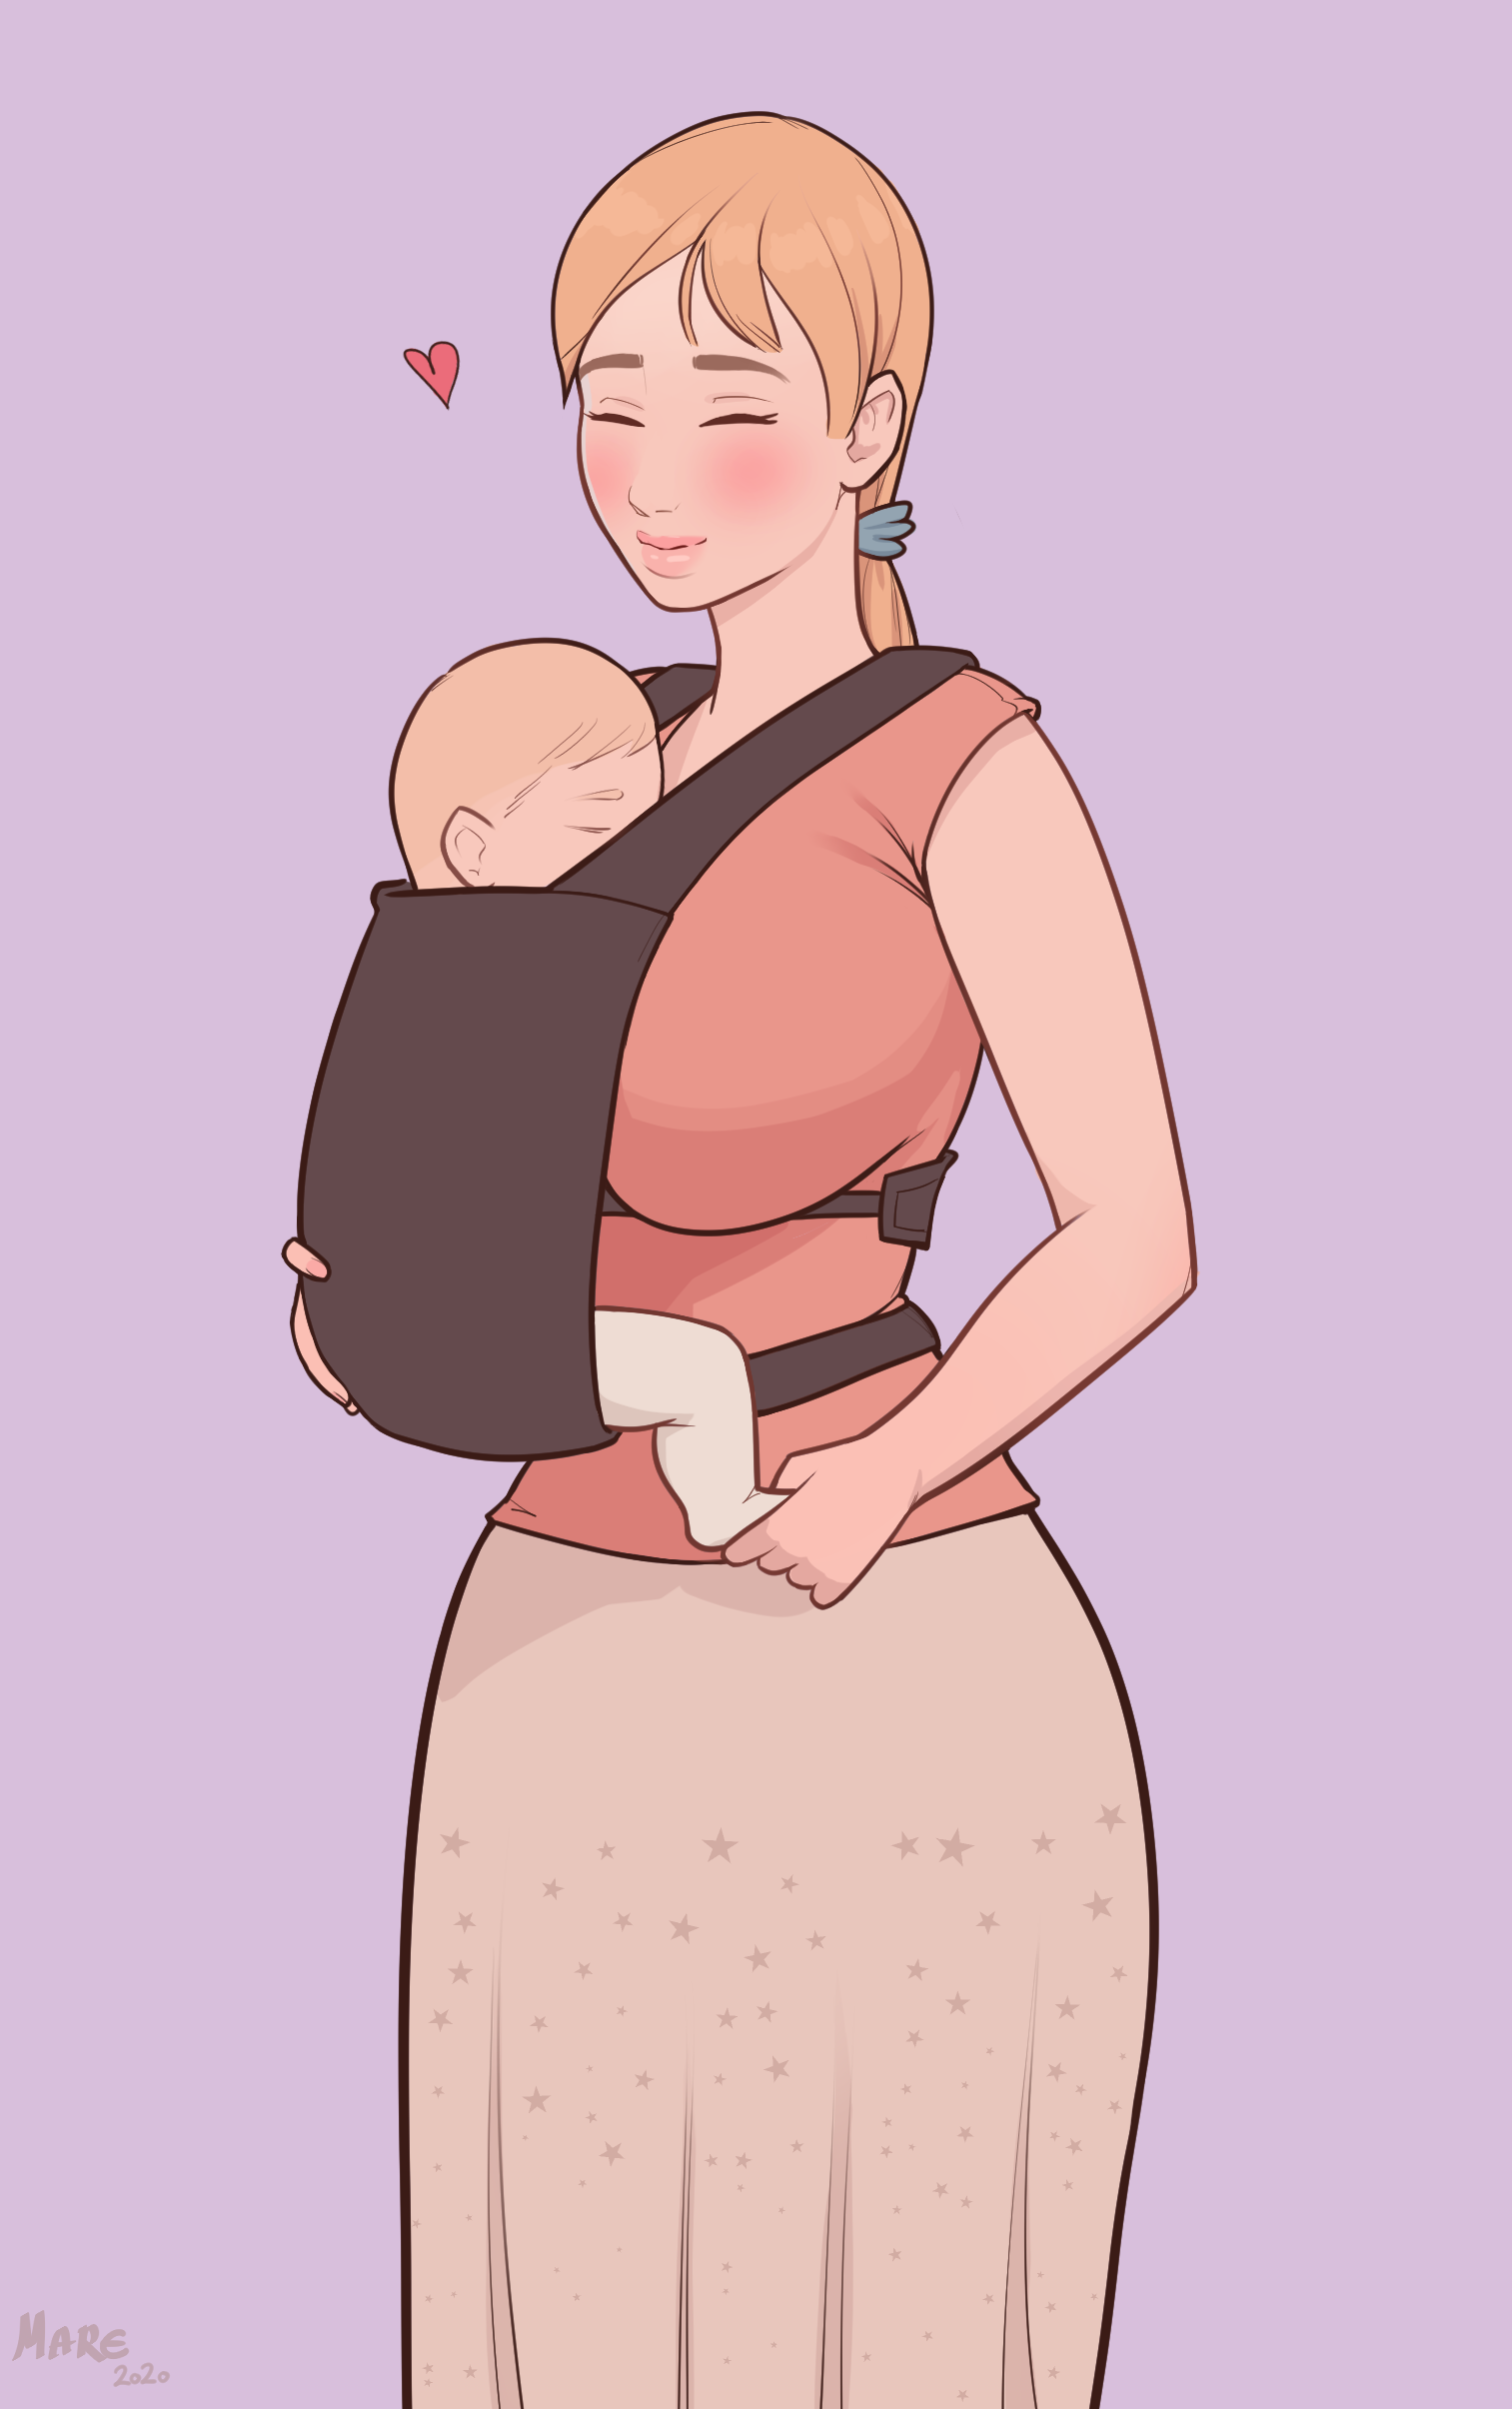 a cute mother插画图片壁纸